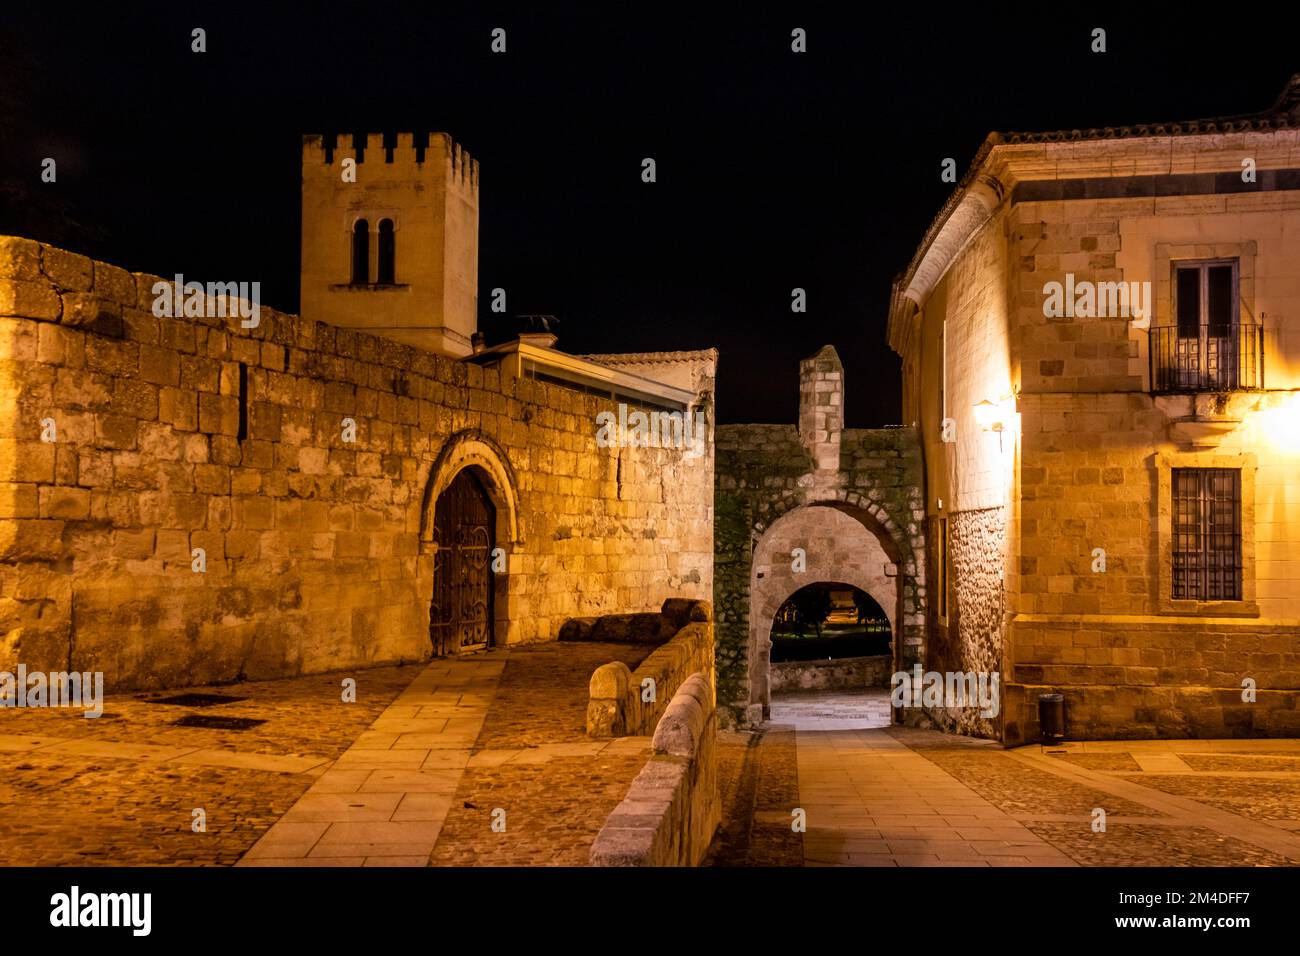 Tranquilidad y calma en la noche, Zamora, España Banque D'Images